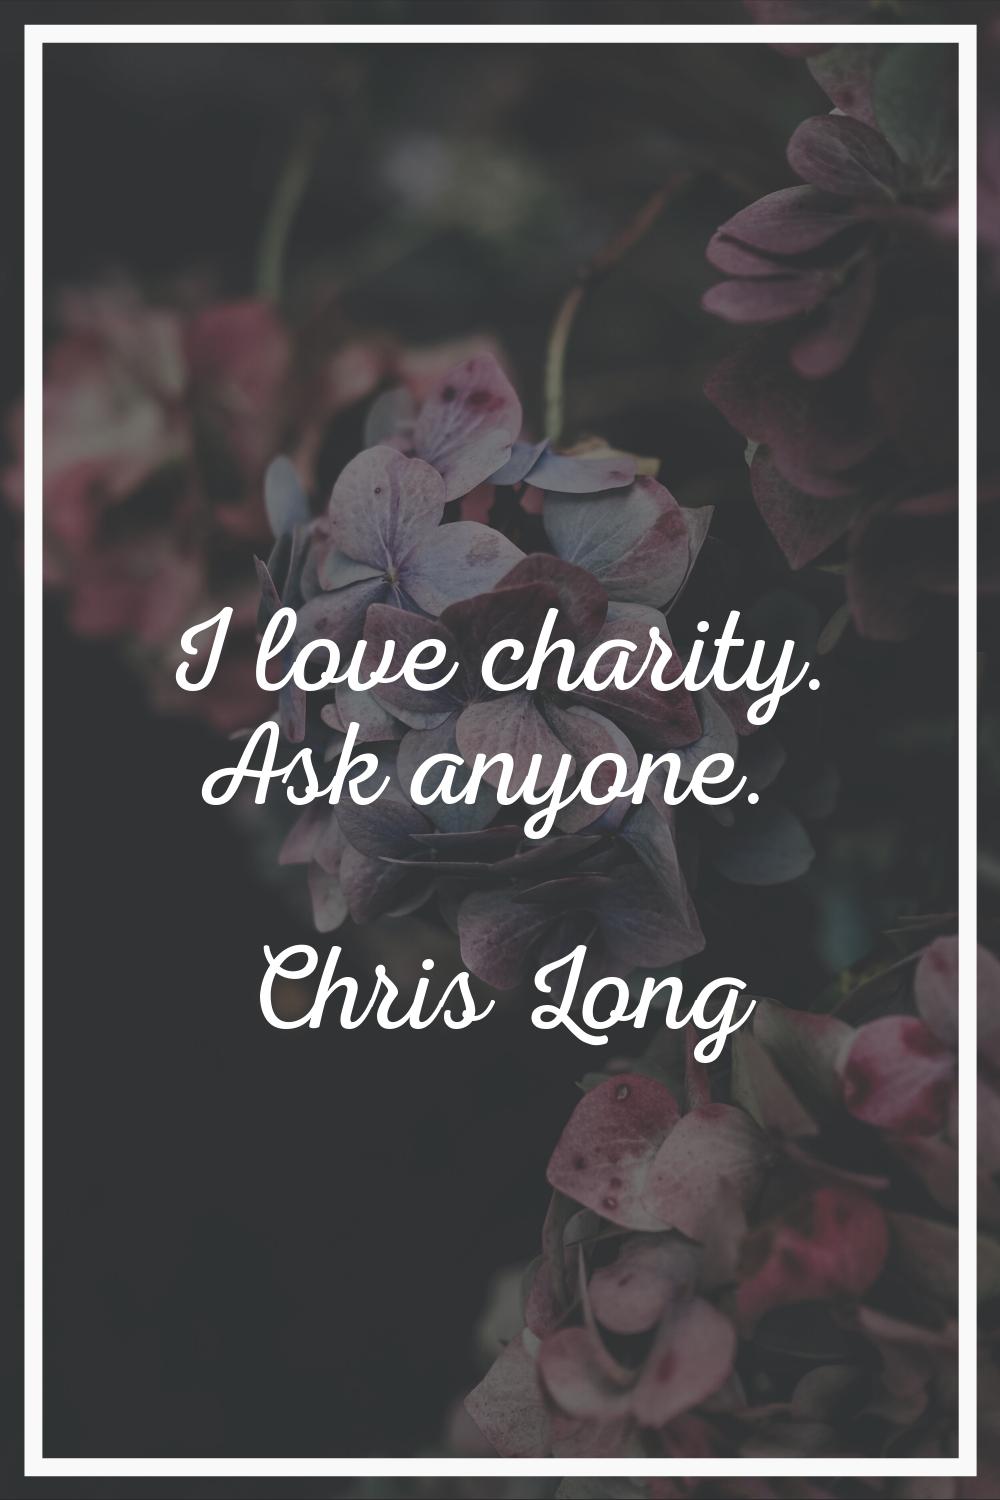 I love charity. Ask anyone.